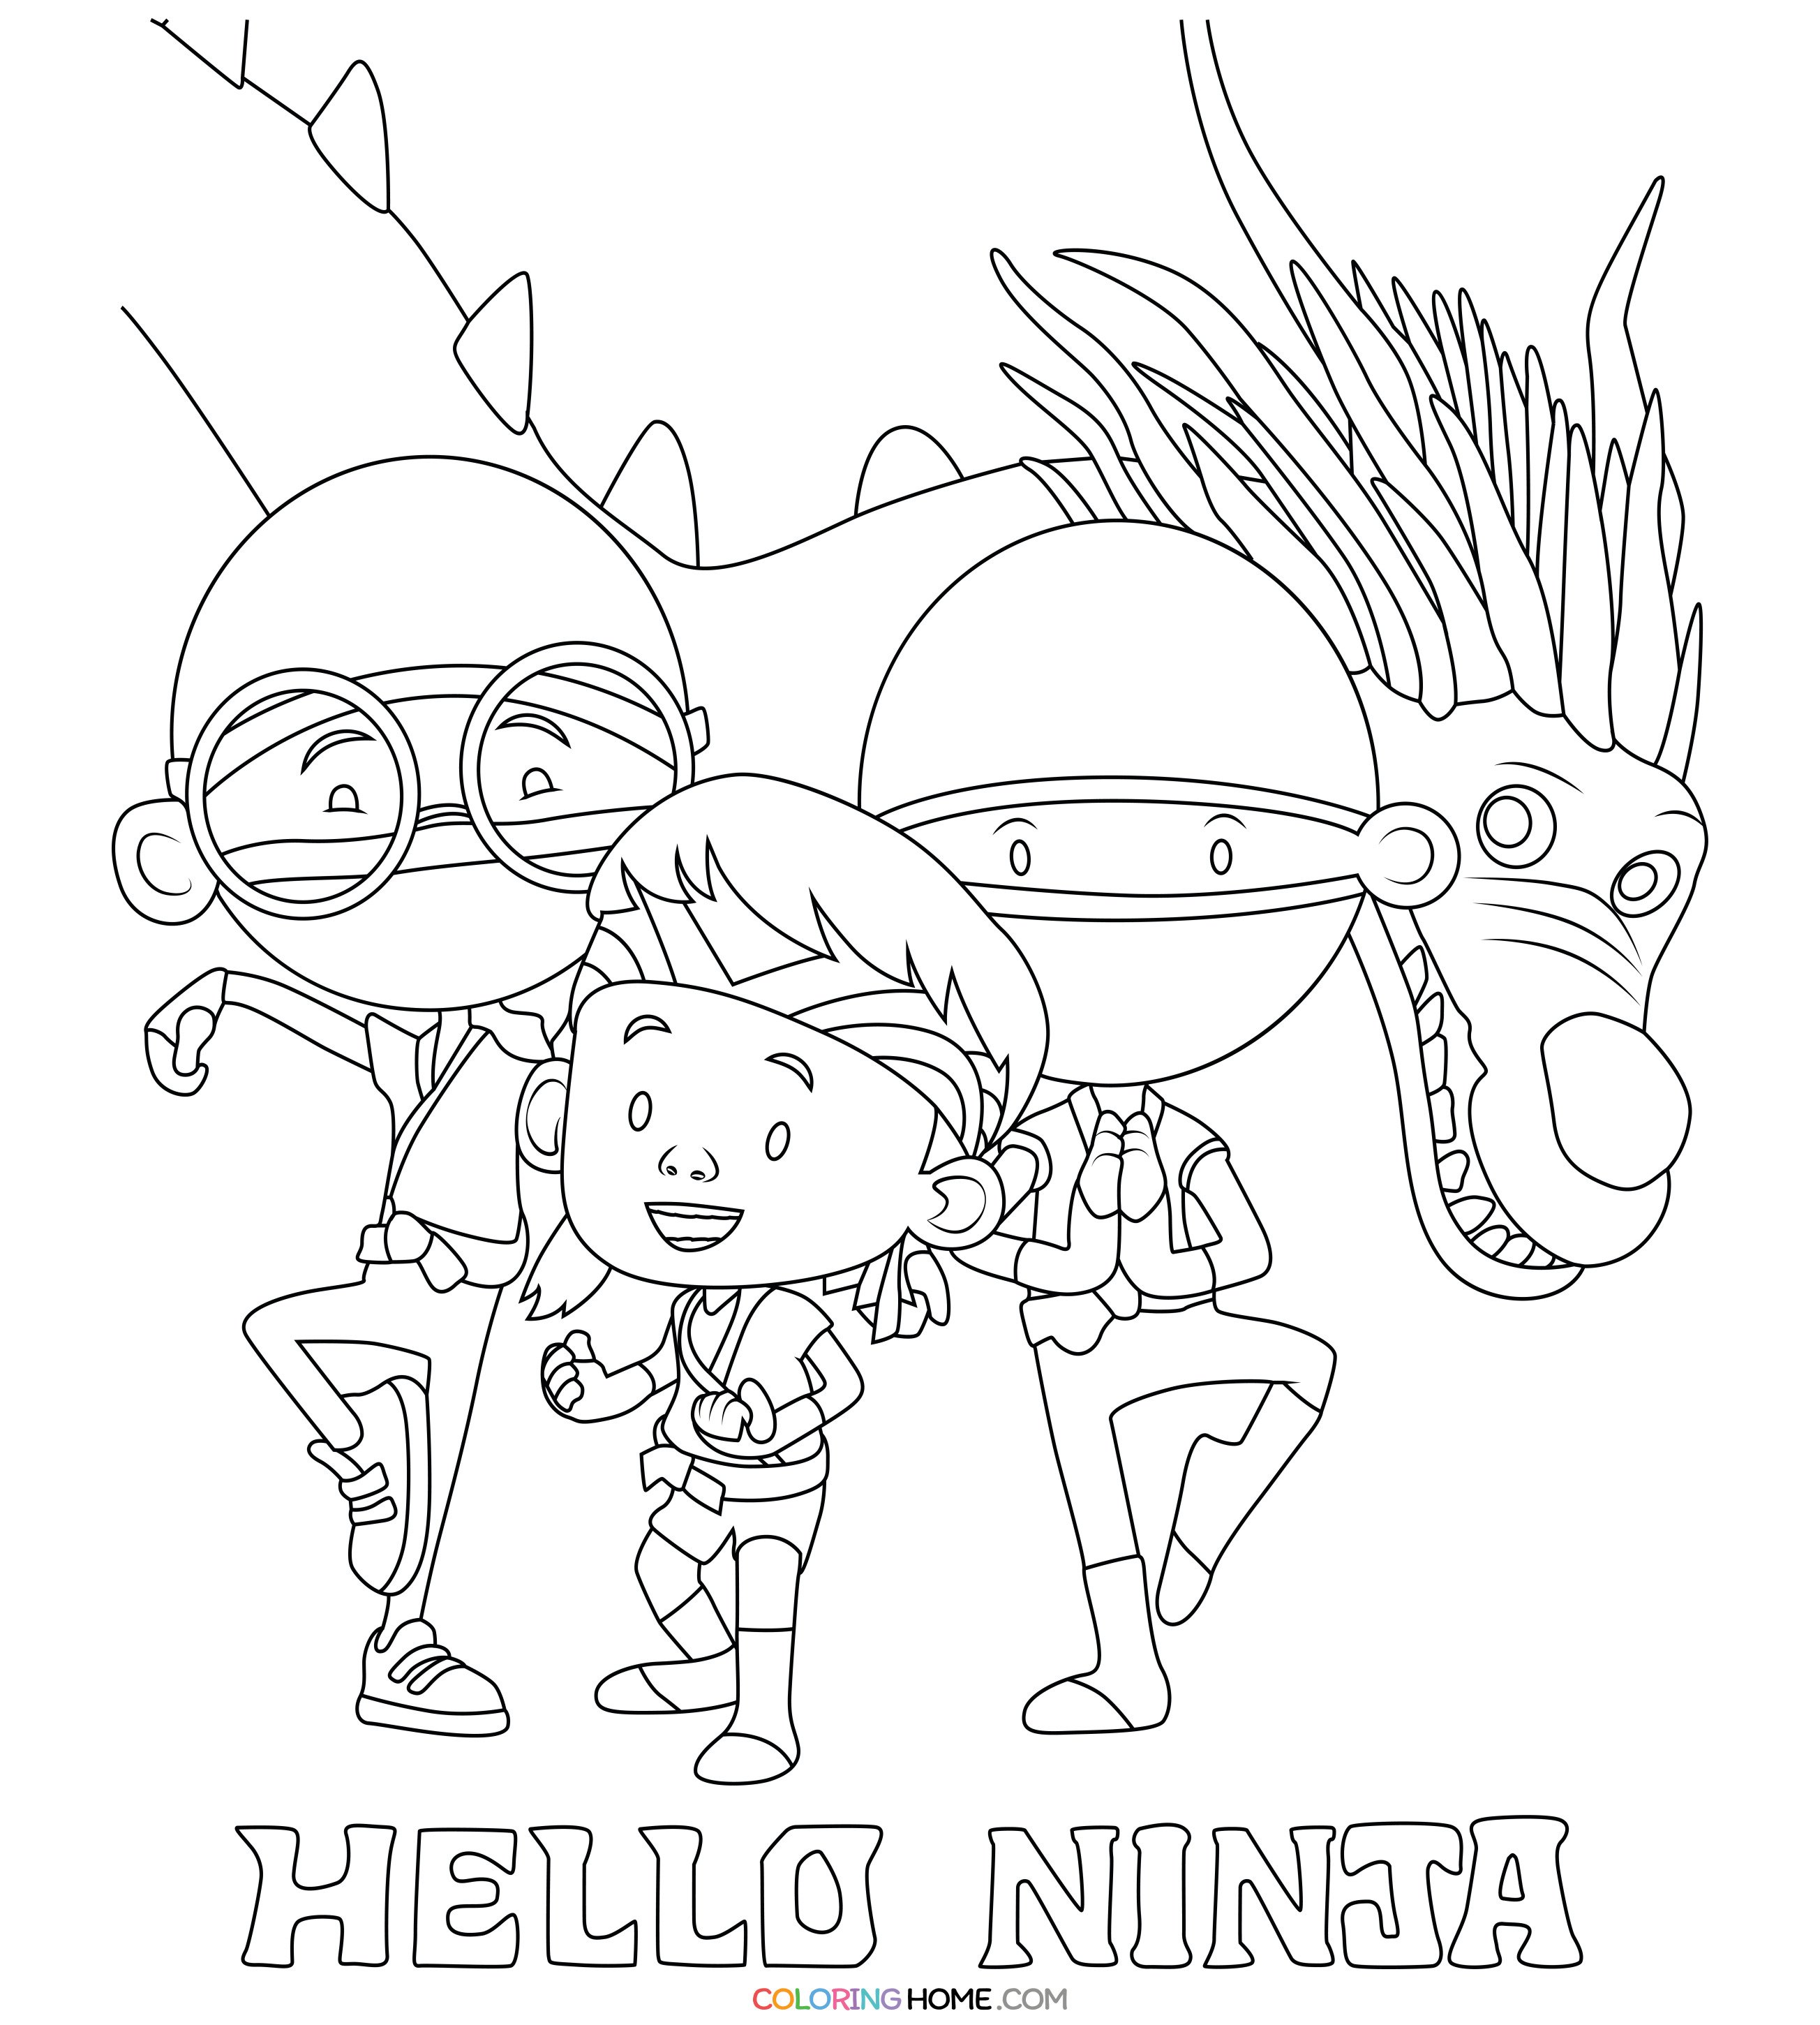 Hello Ninja coloring page